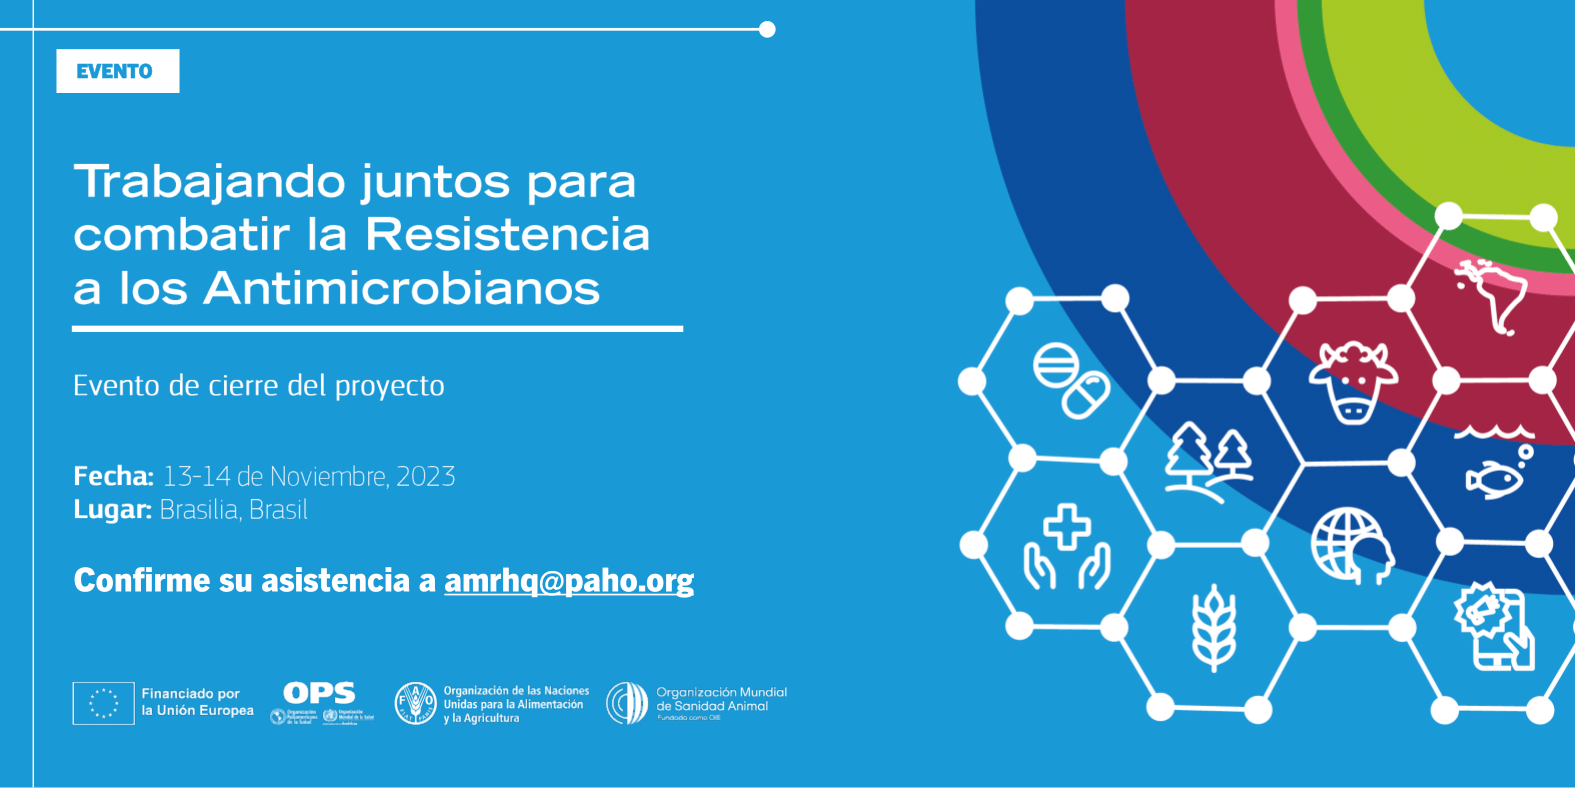 Evento de cierre del proyecto: Trabajando juntos para combatir la resistencia a los antimicrobianos